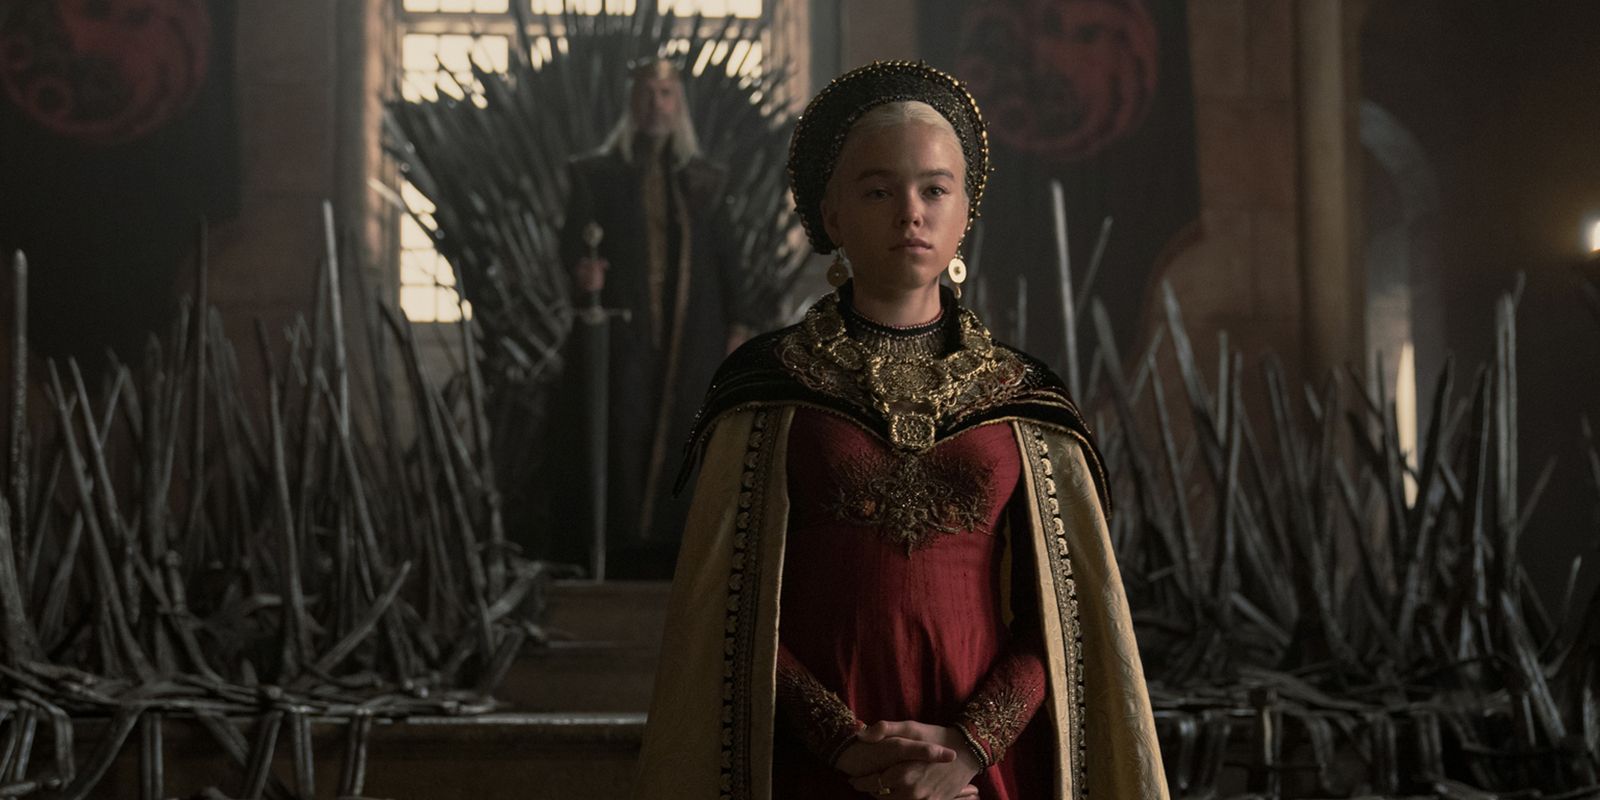 Milly Alcock dans le rôle de Rhaenyra Targaryen après avoir été déclarée héritière de House of the Dragon